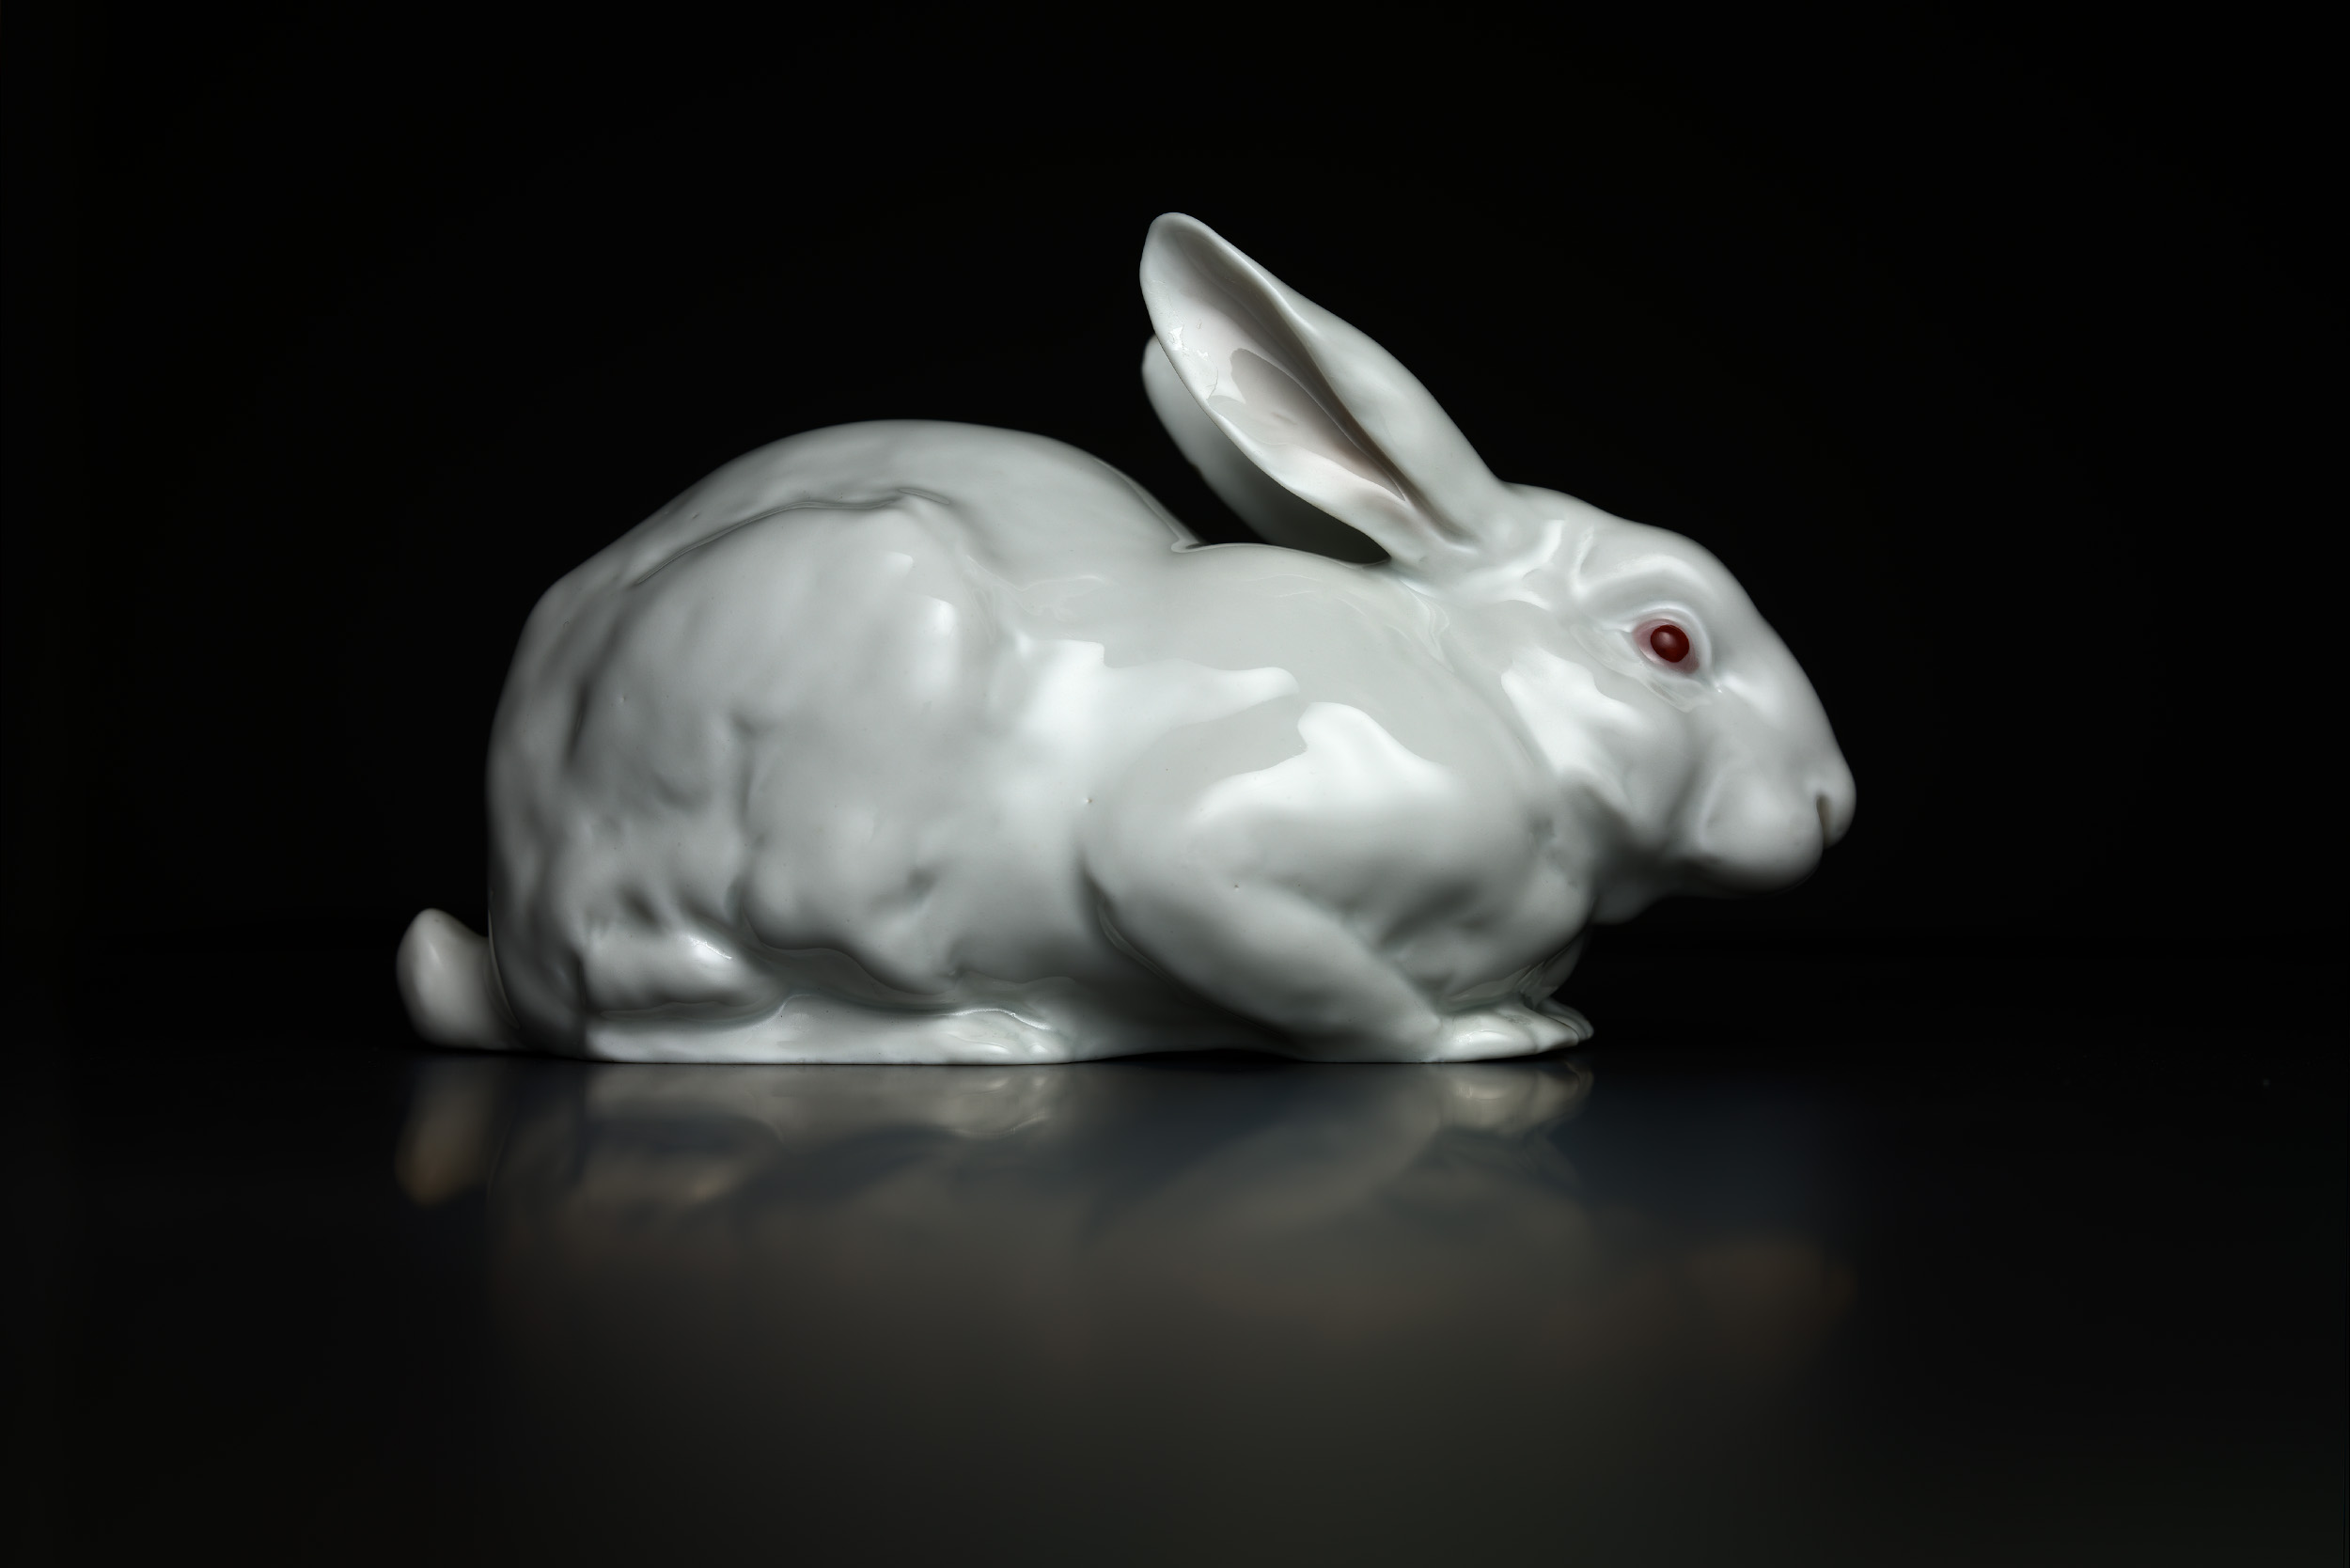  White Rabbit 